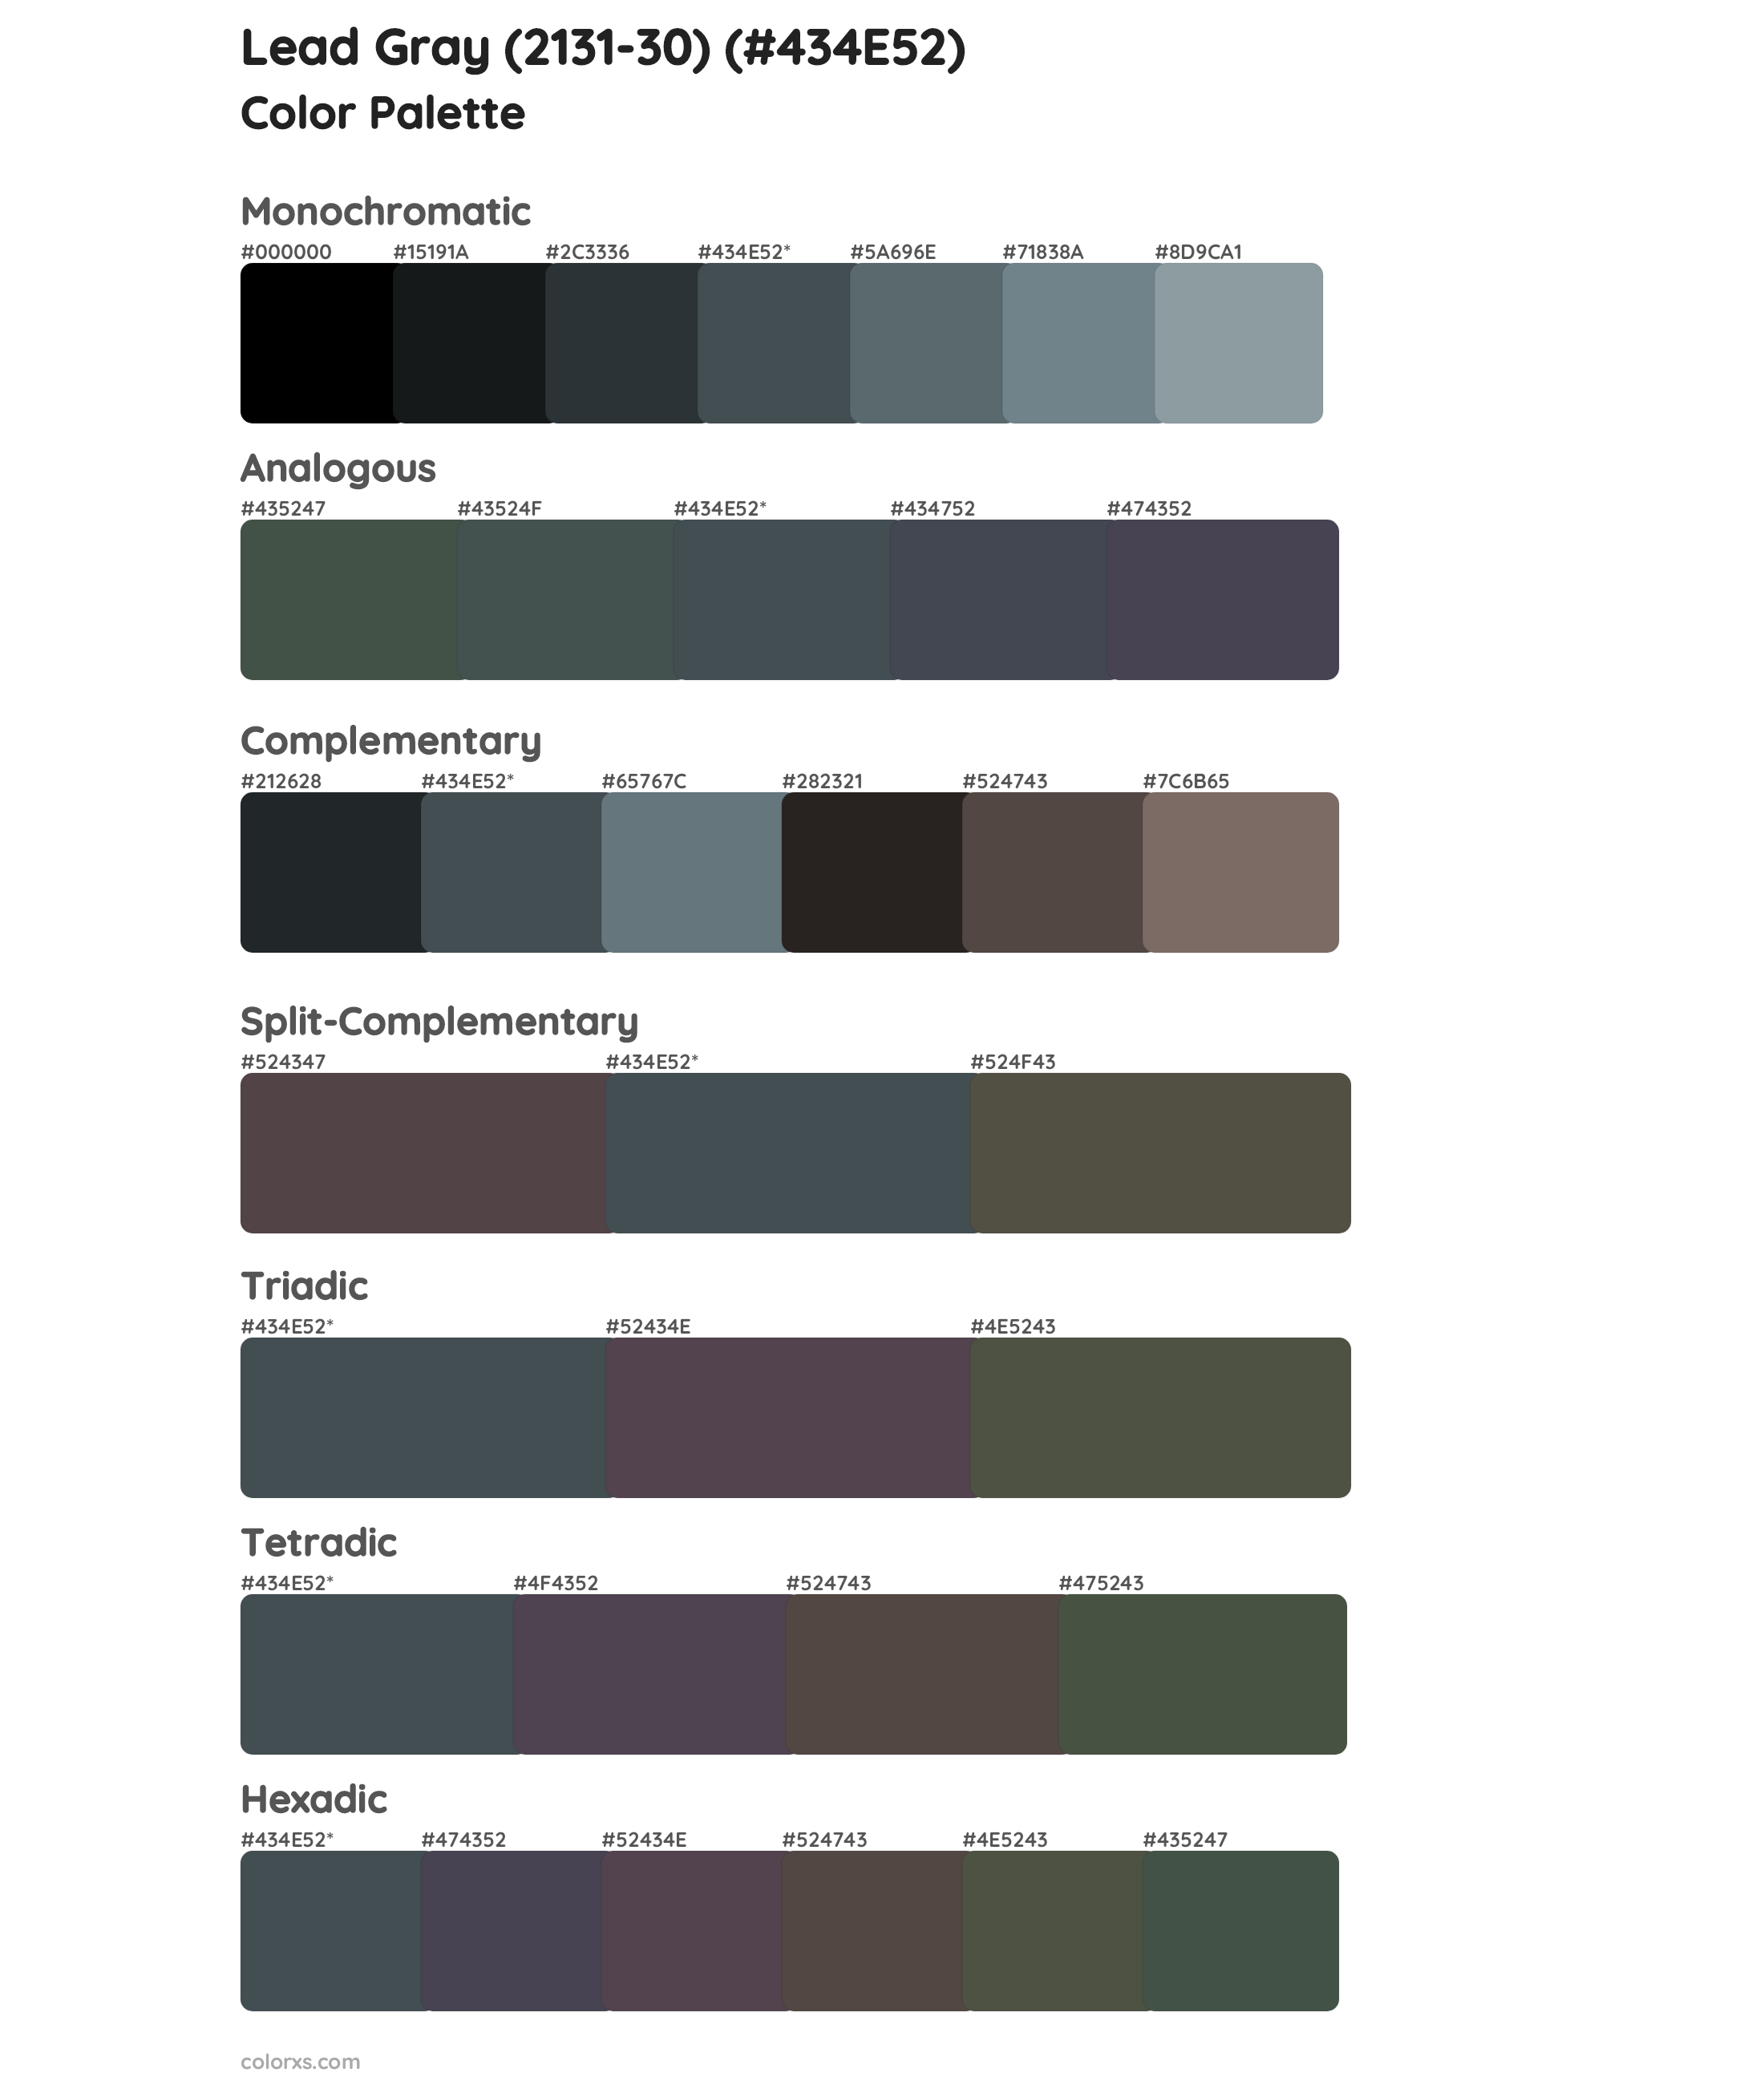 Lead Gray (2131-30) Color Scheme Palettes